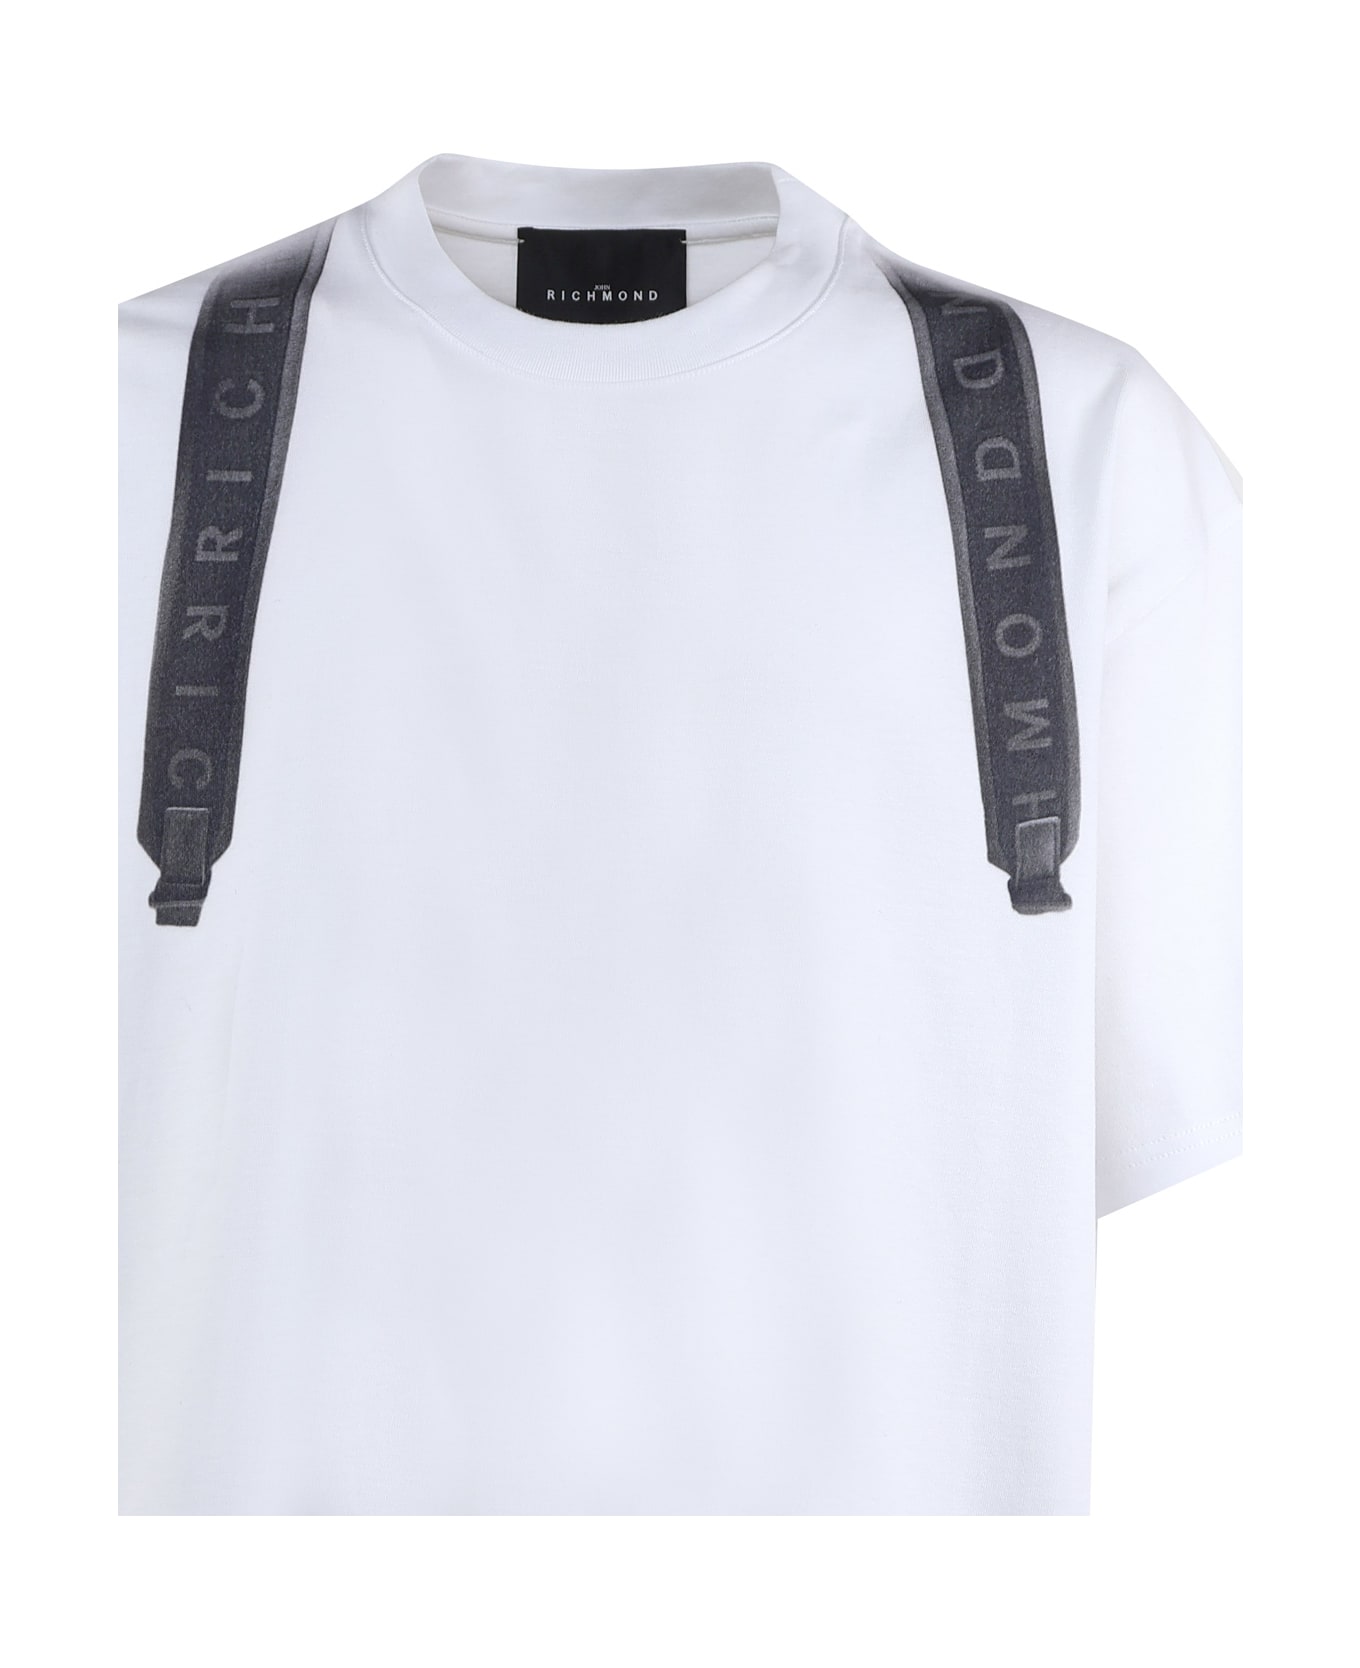 John Richmond T-shirt With Print - White シャツ